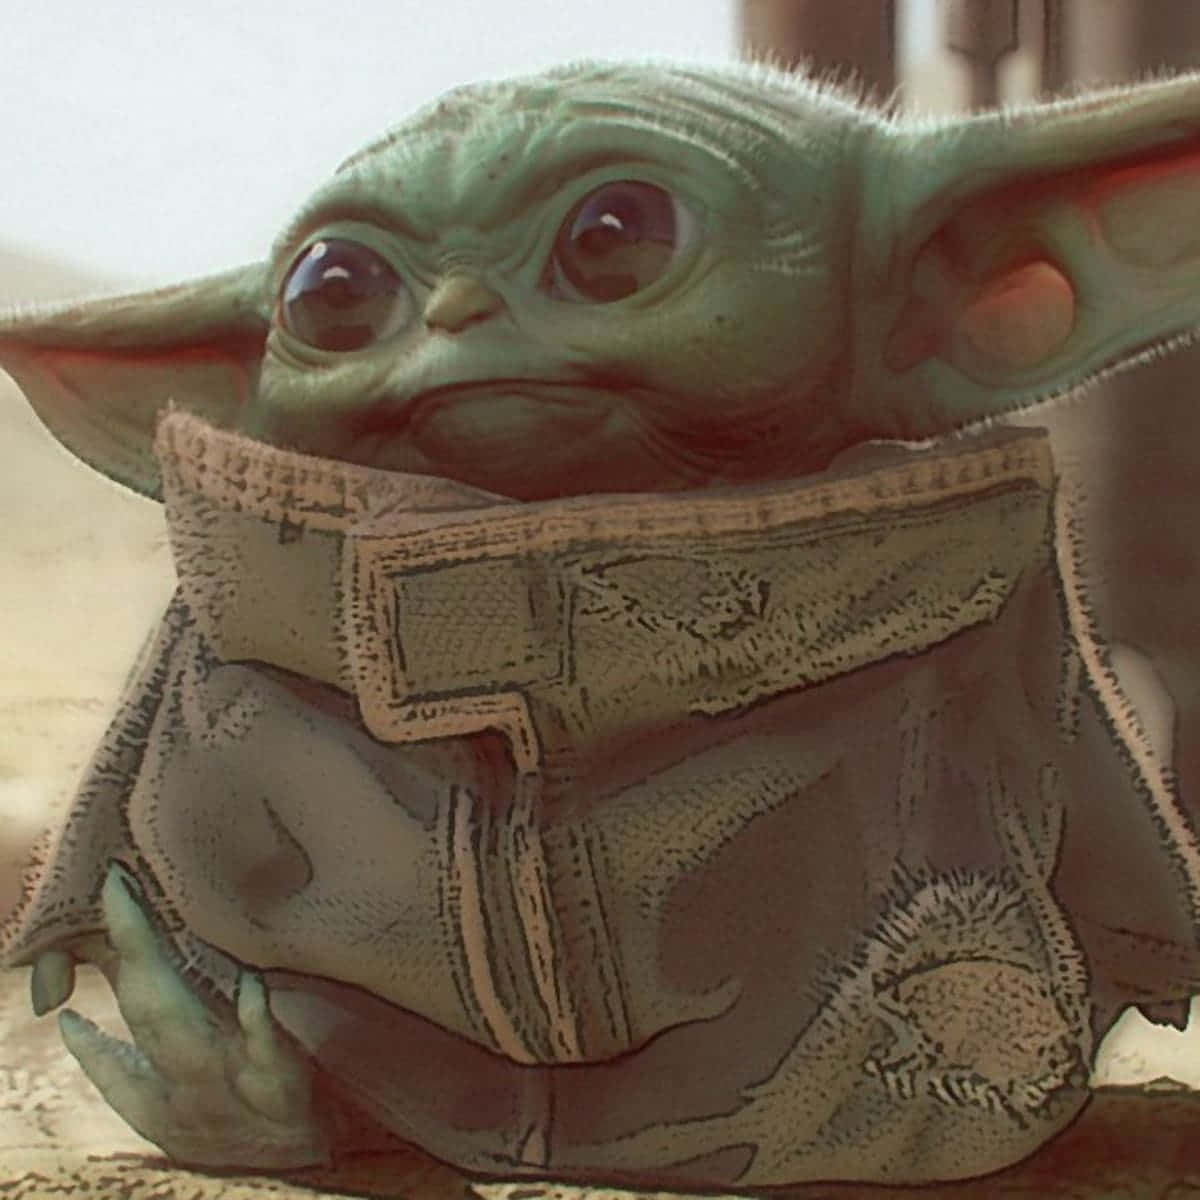 Carinobaby Yoda Nella Sua Veste Immagine.